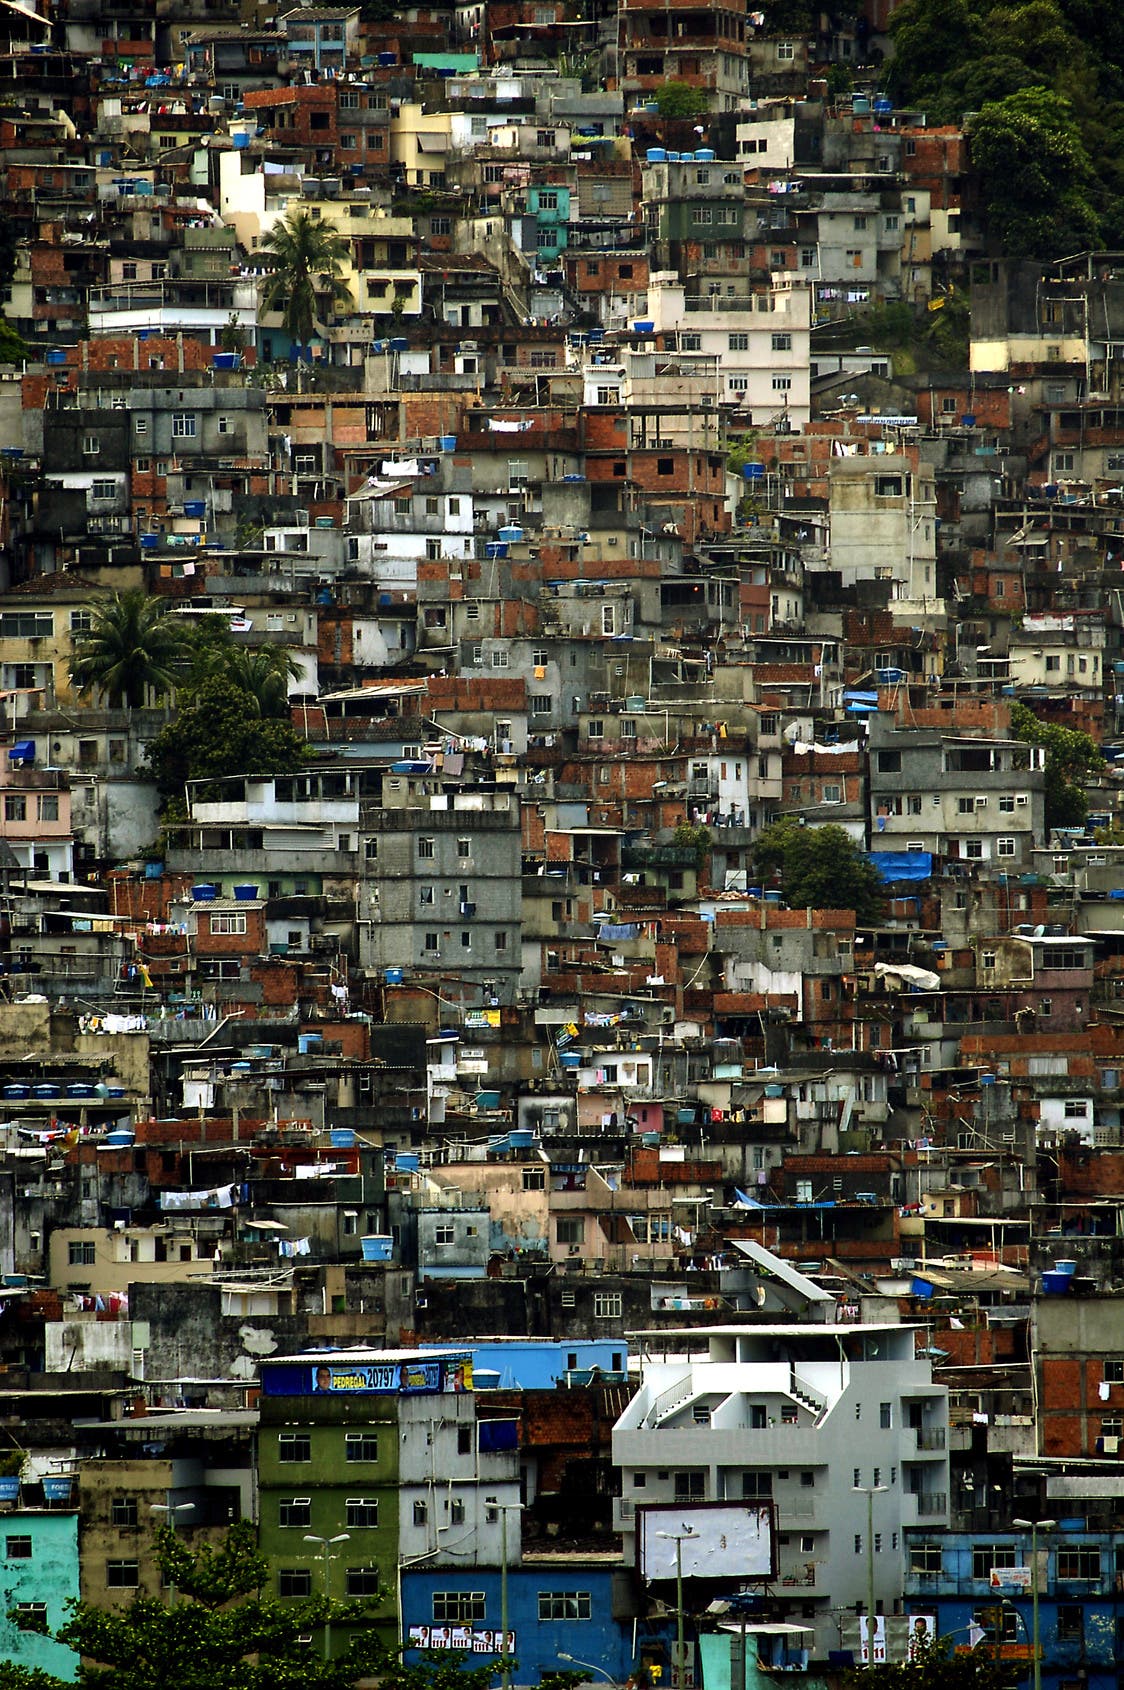 Favelas in Rio de Janeiro